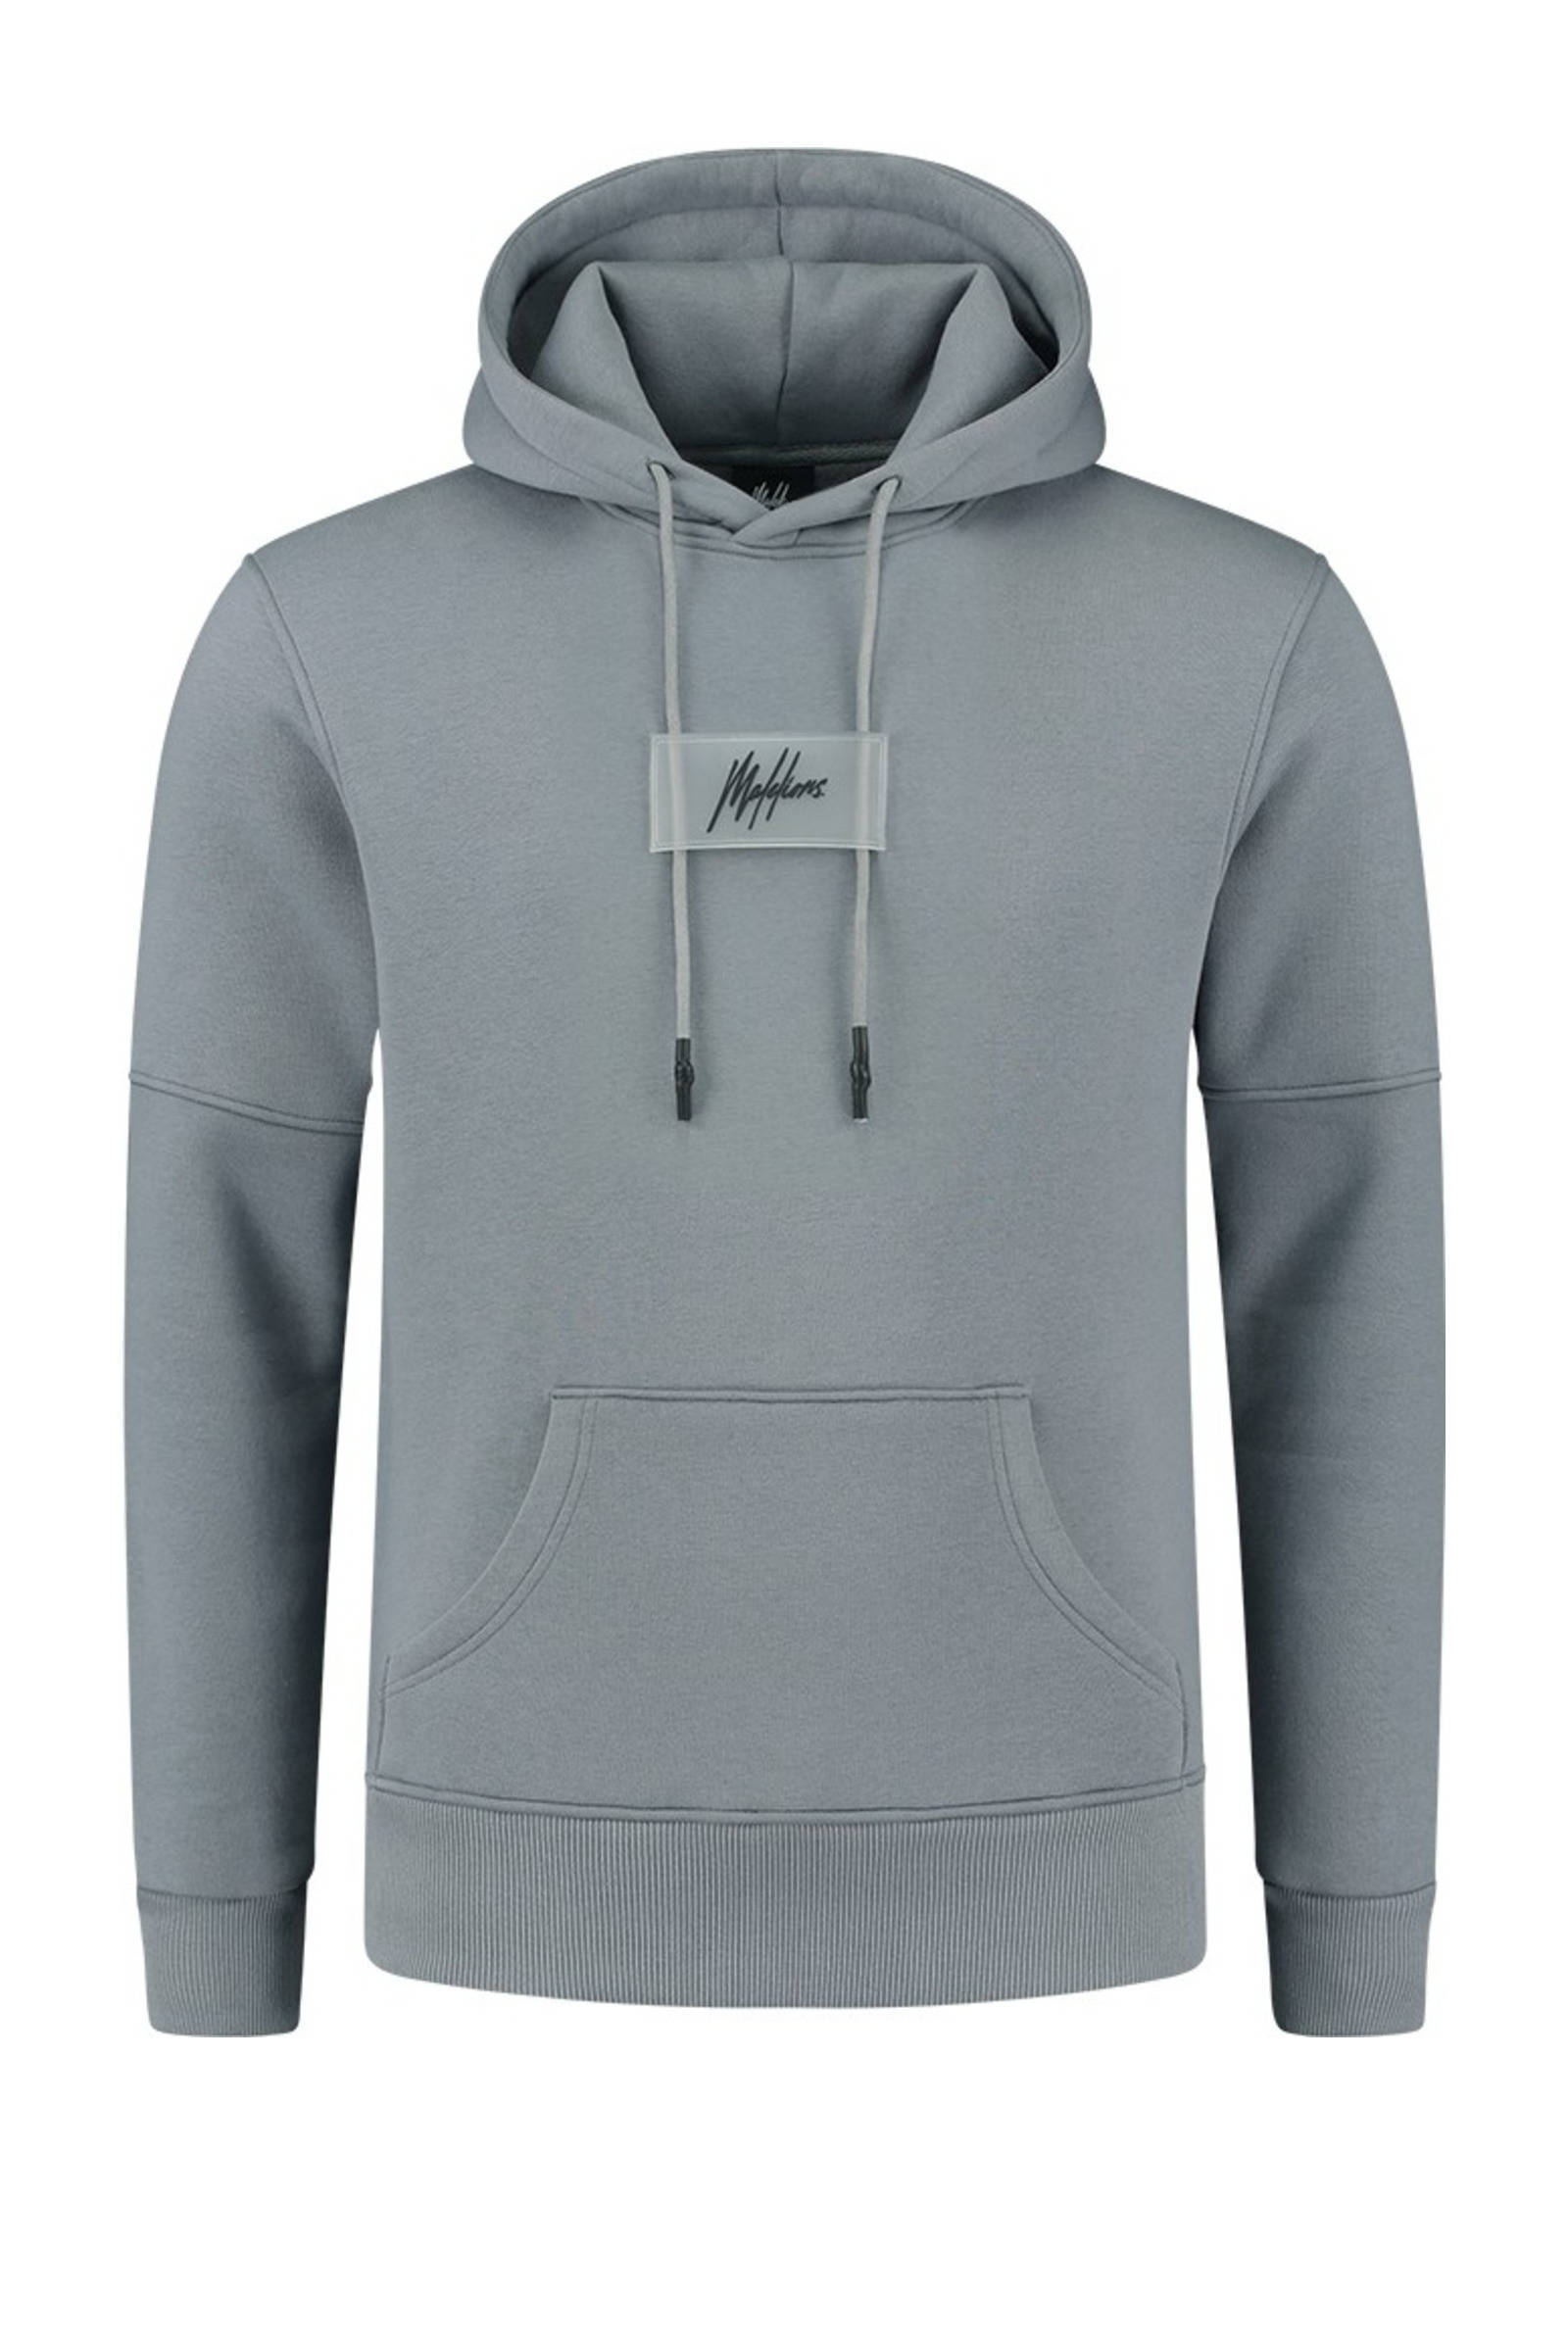 Malelions hoodie met logo grijs online kopen